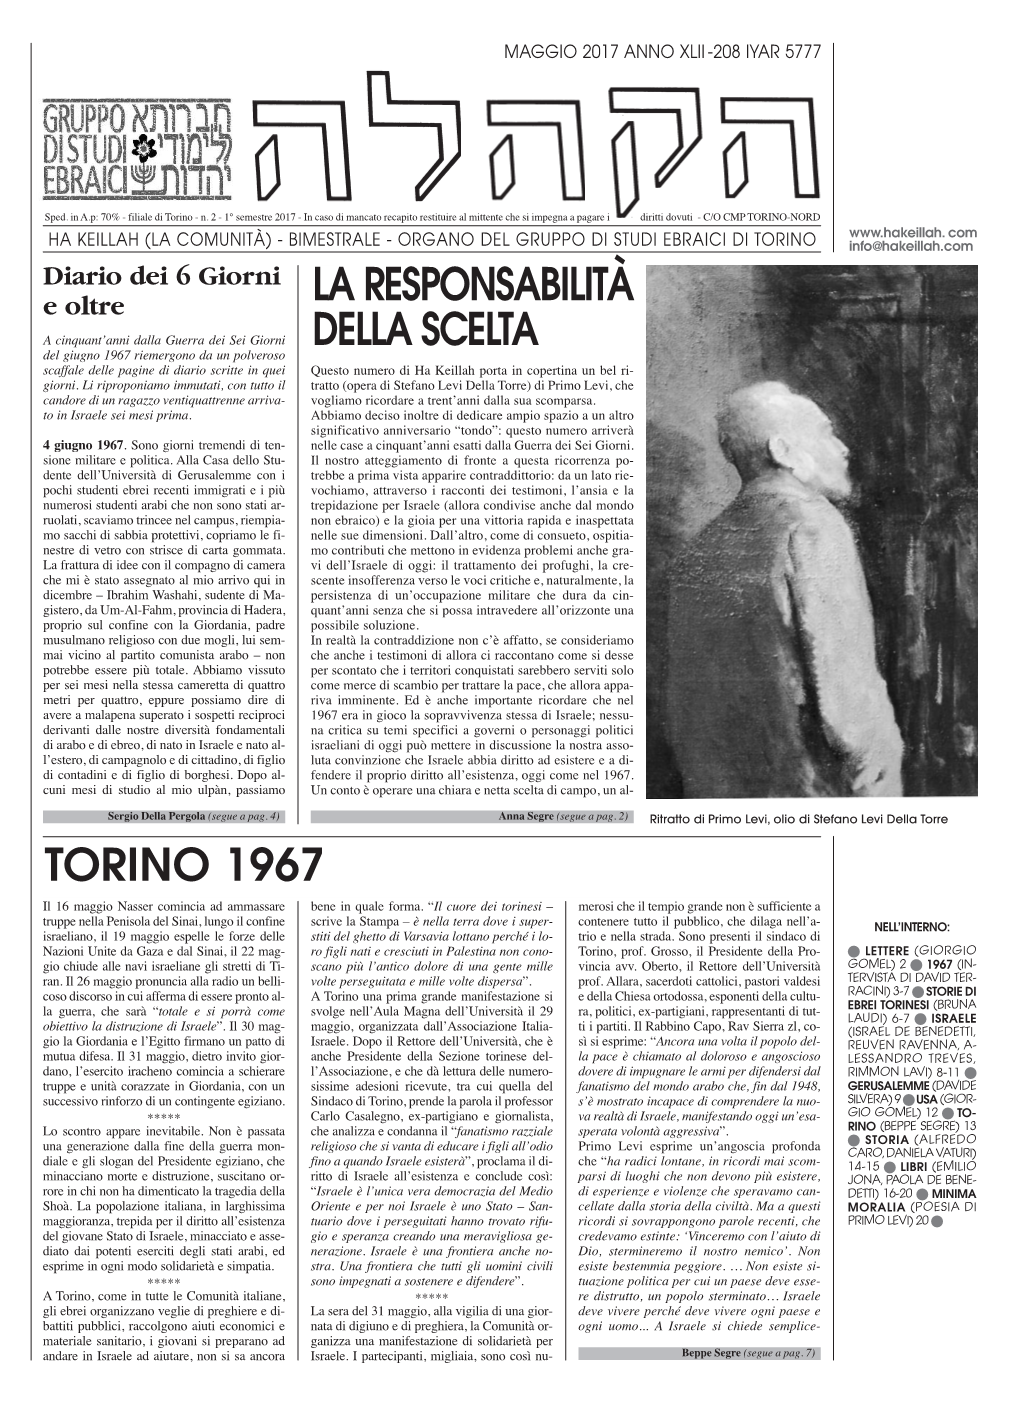 Torino 1967 La Responsabilità Della Scelta